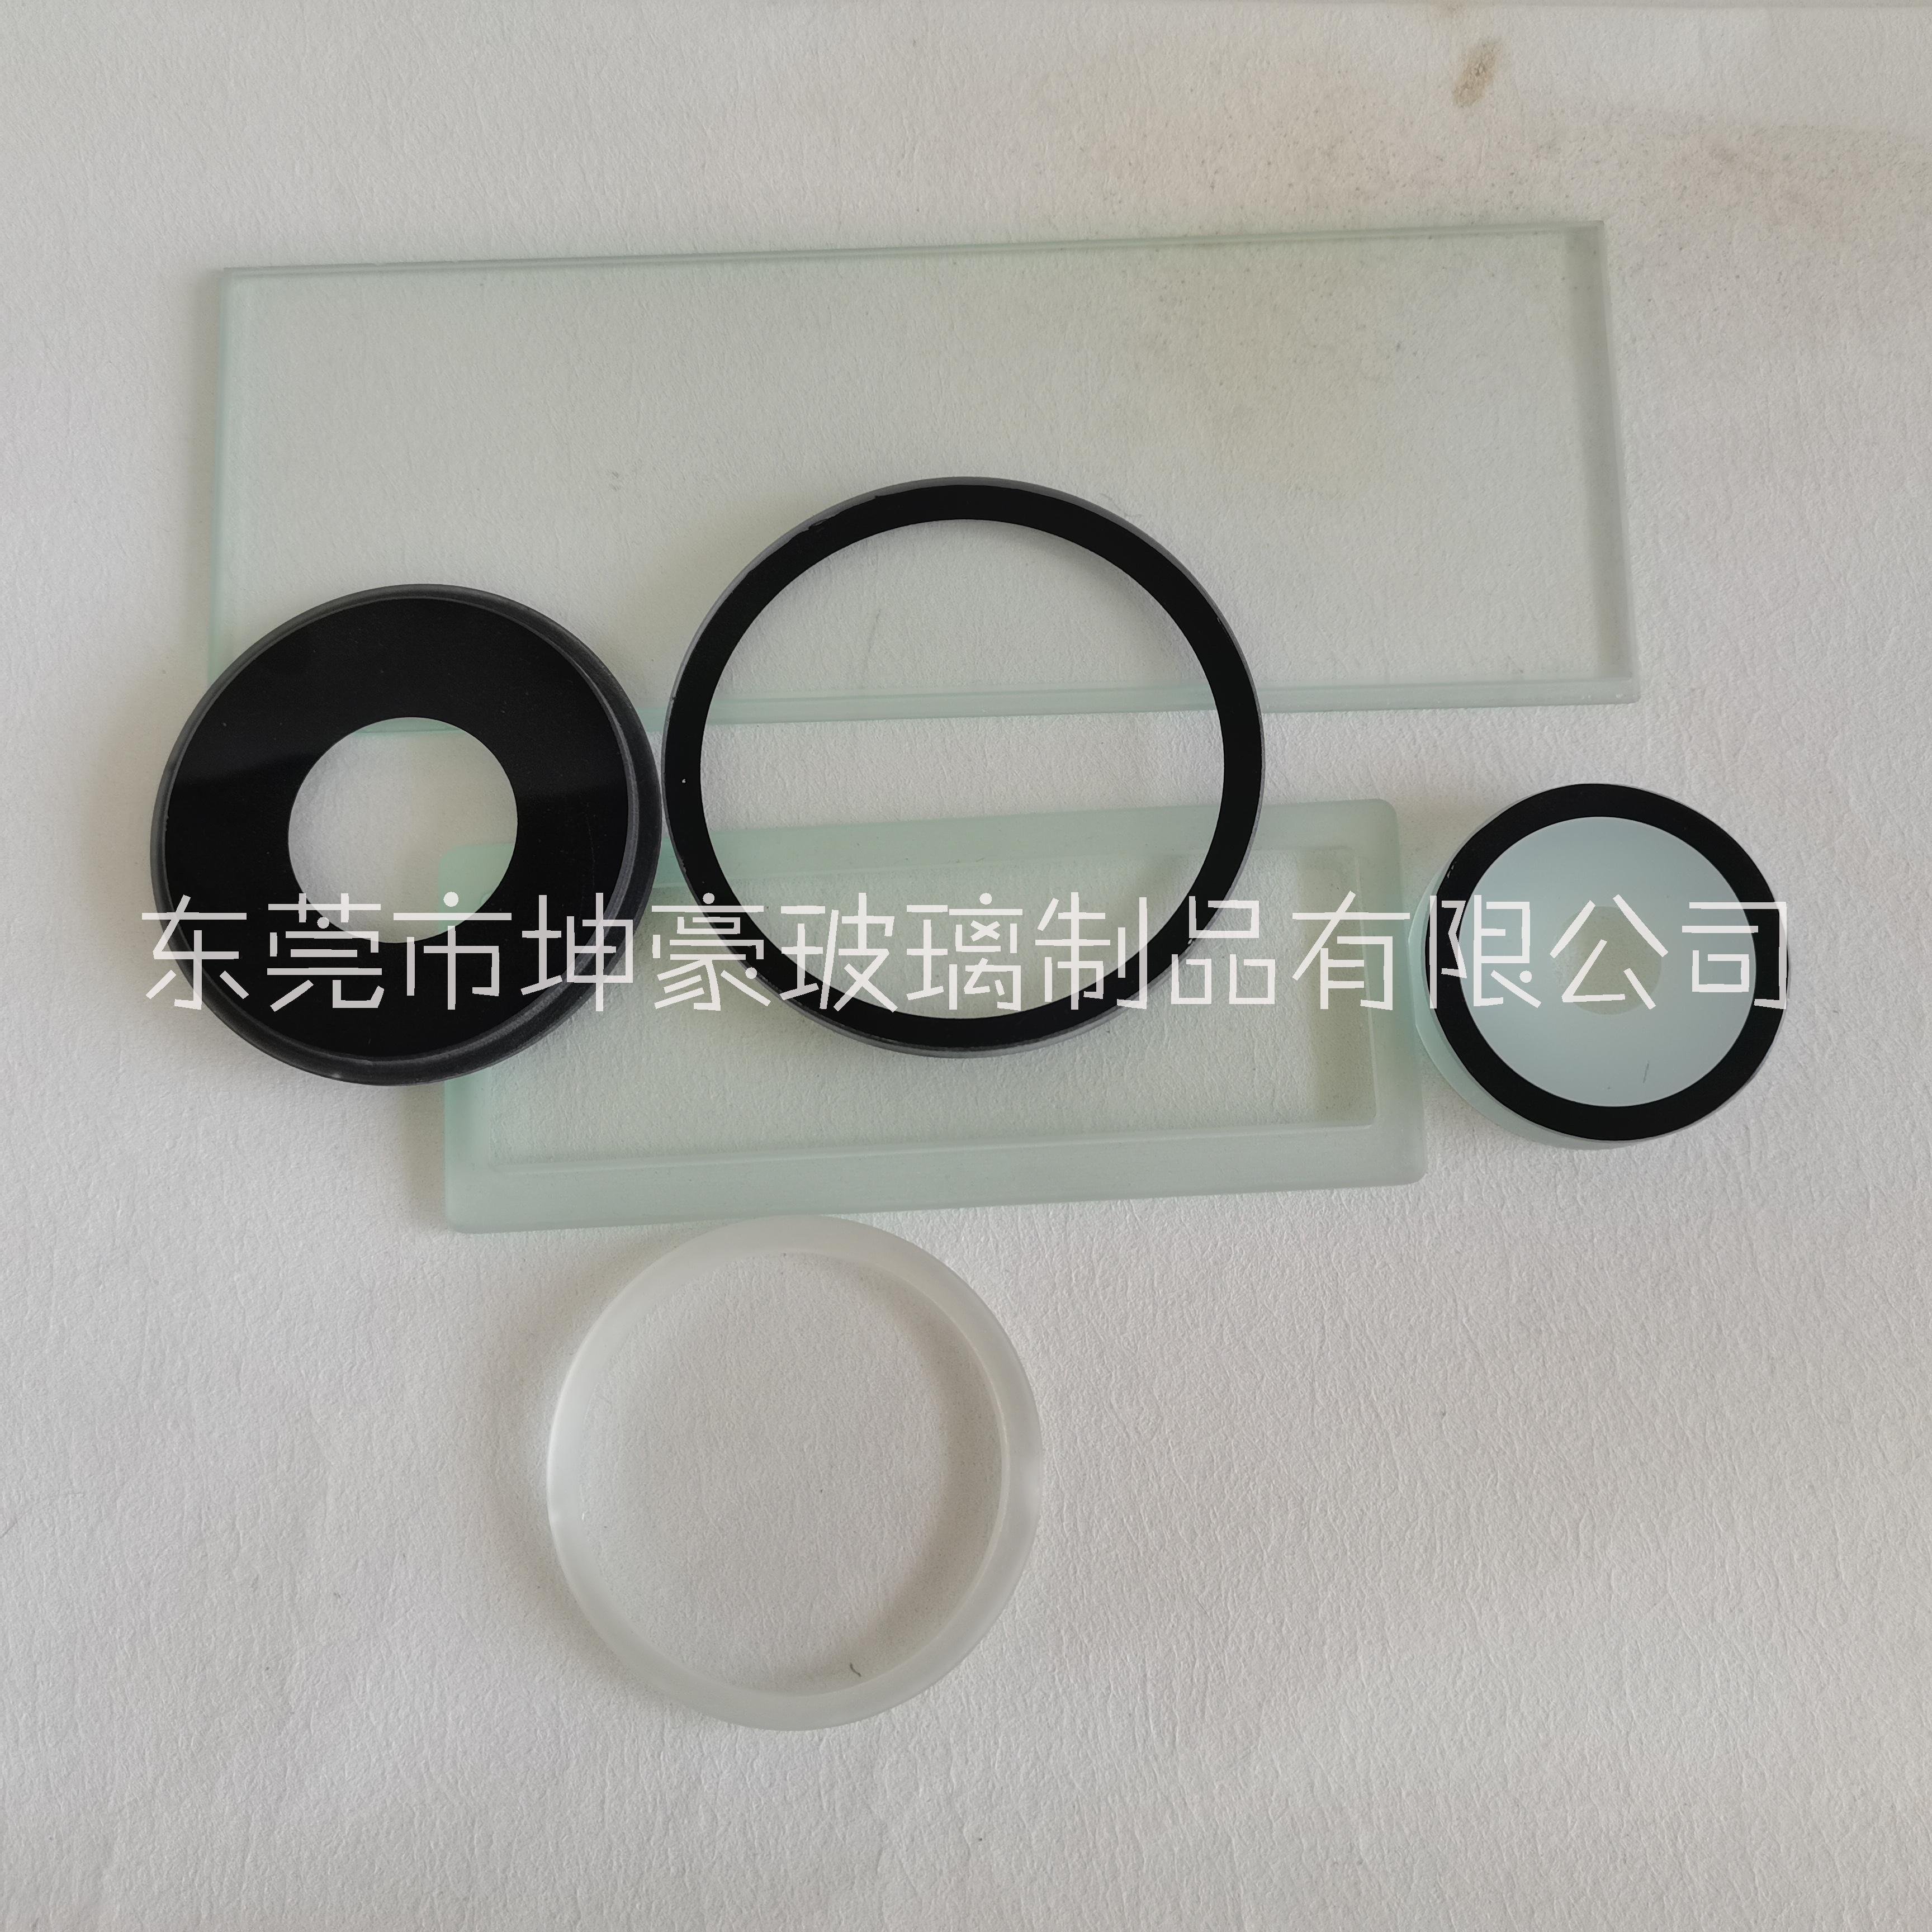 东莞坤豪玻璃厂 生产 5mm超白玻璃灯具玻璃 透光率强 可按需求加工图片